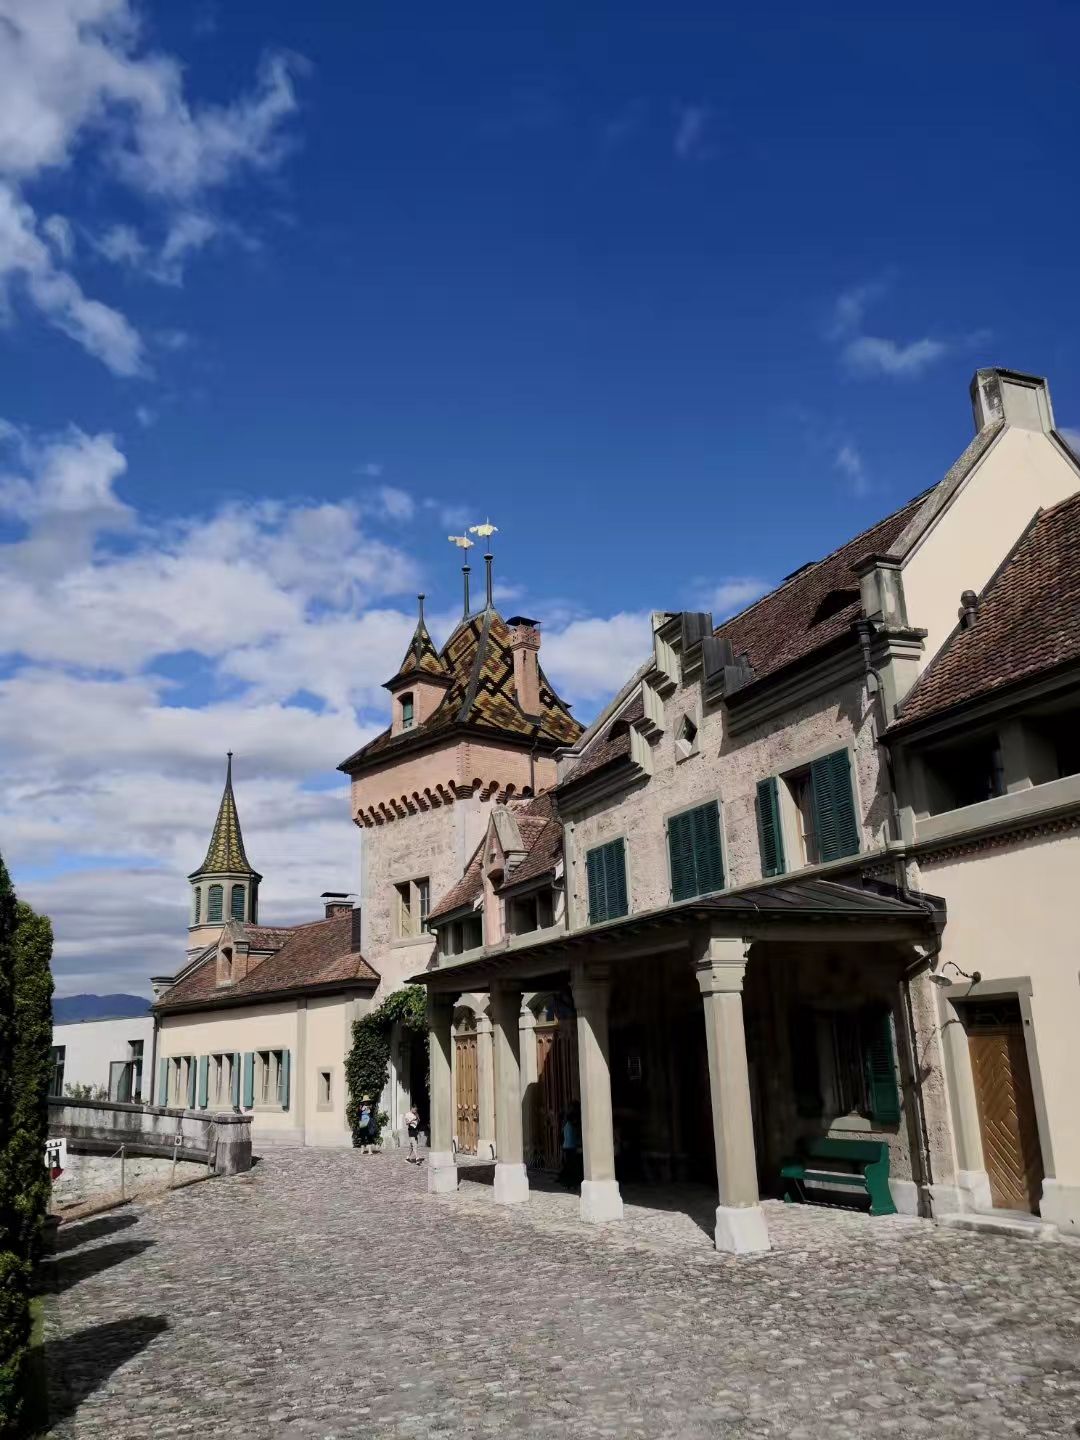 奥伯霍芬城堡座落于图恩湖畔。瑞士国家标志遗产。 最早为十三世纪奥伯霍芬土地的主人给女儿的嫁妆。在后来